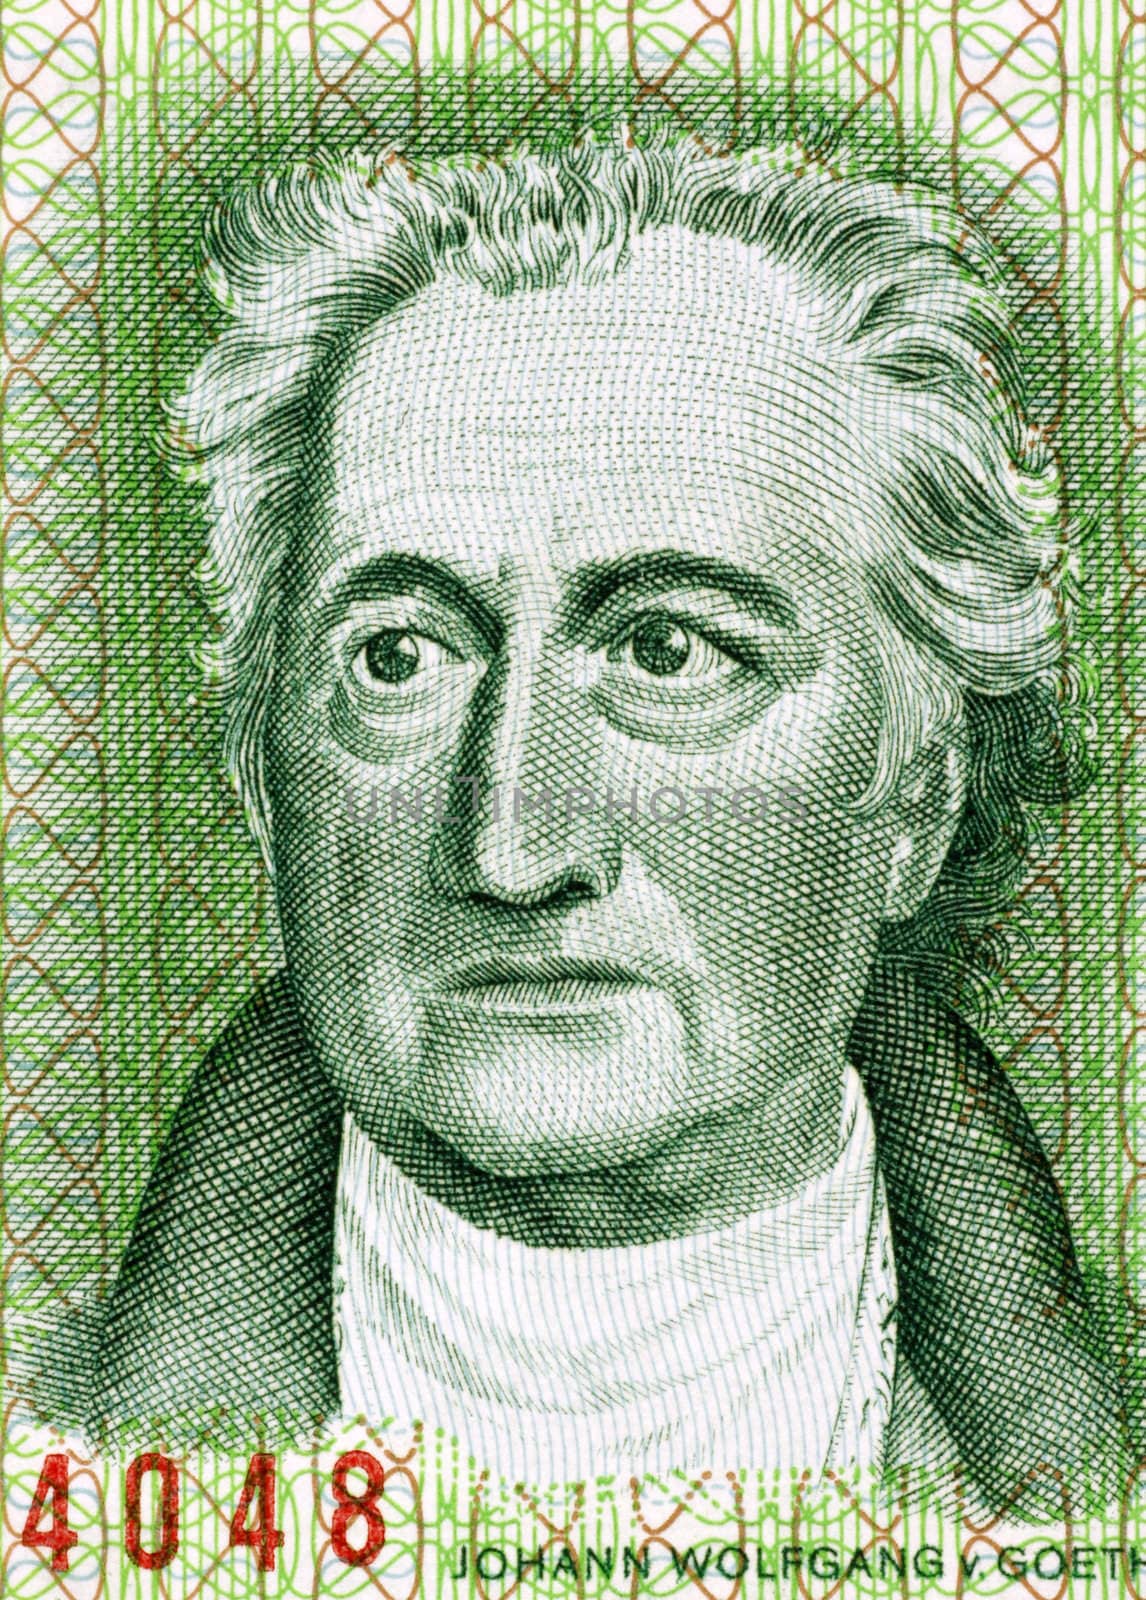 Johann Wolfgang von Goethe by Georgios